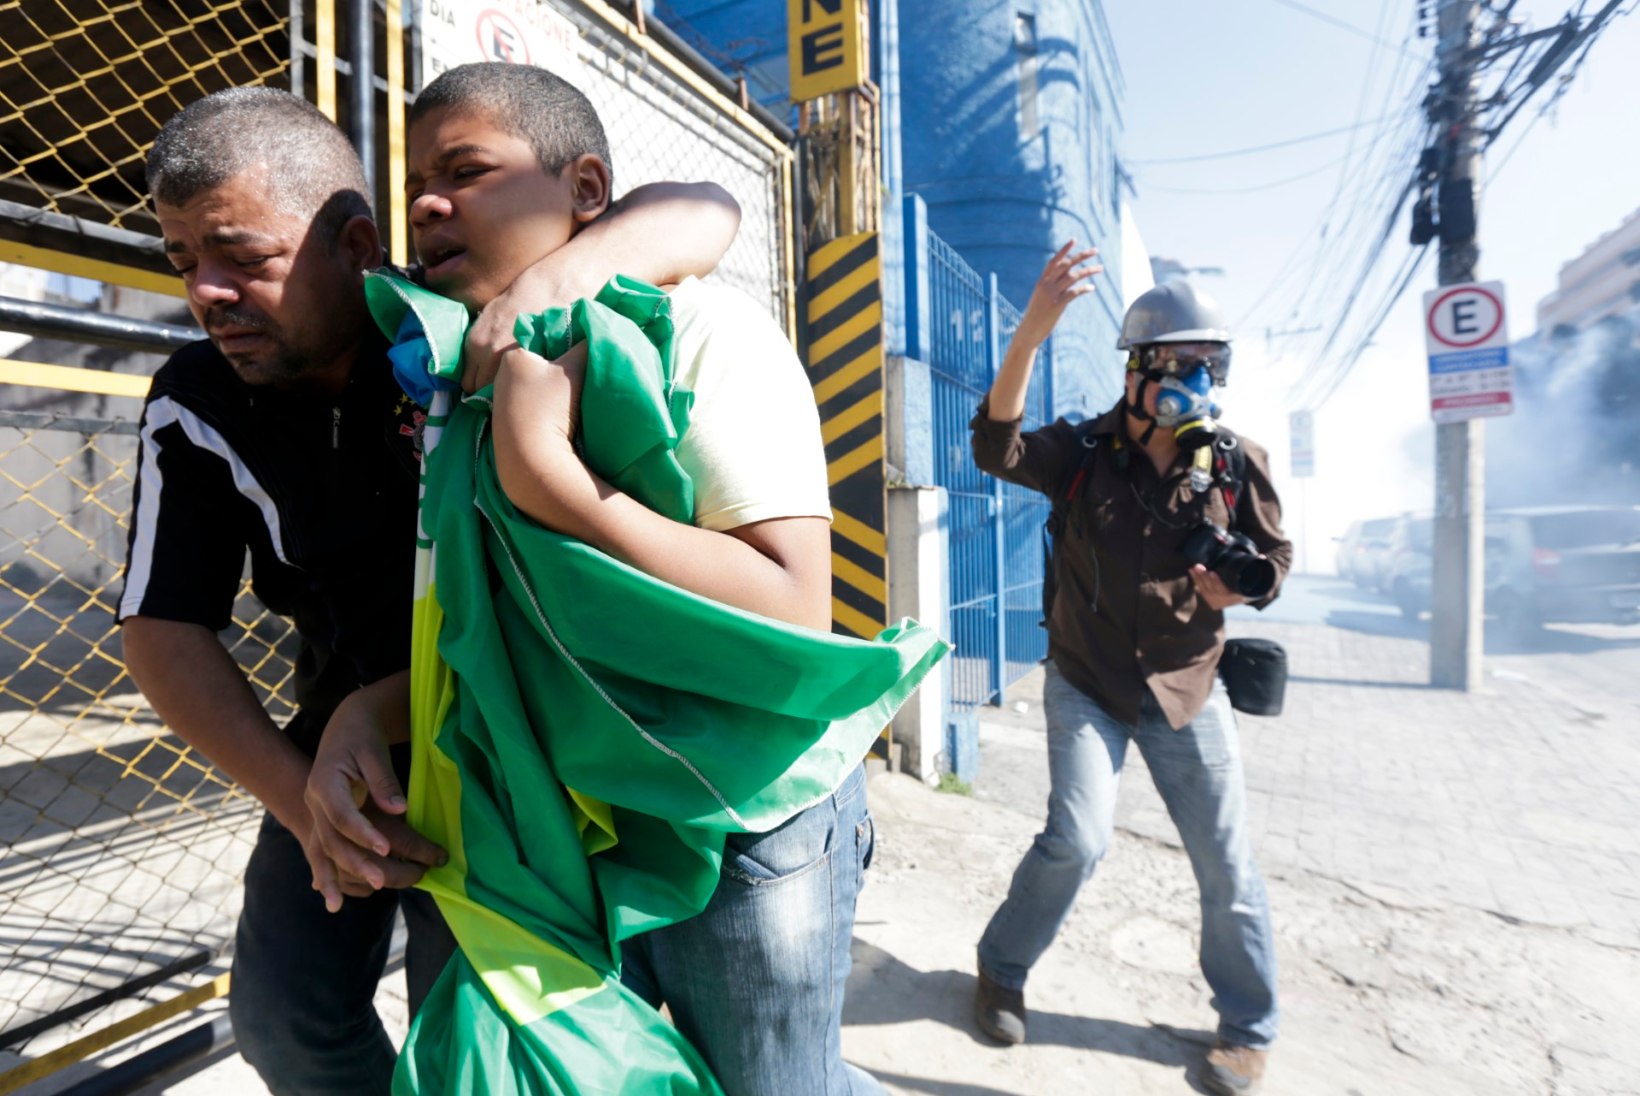 GALERII: Sao Paulos vallandus avamängu eel madin